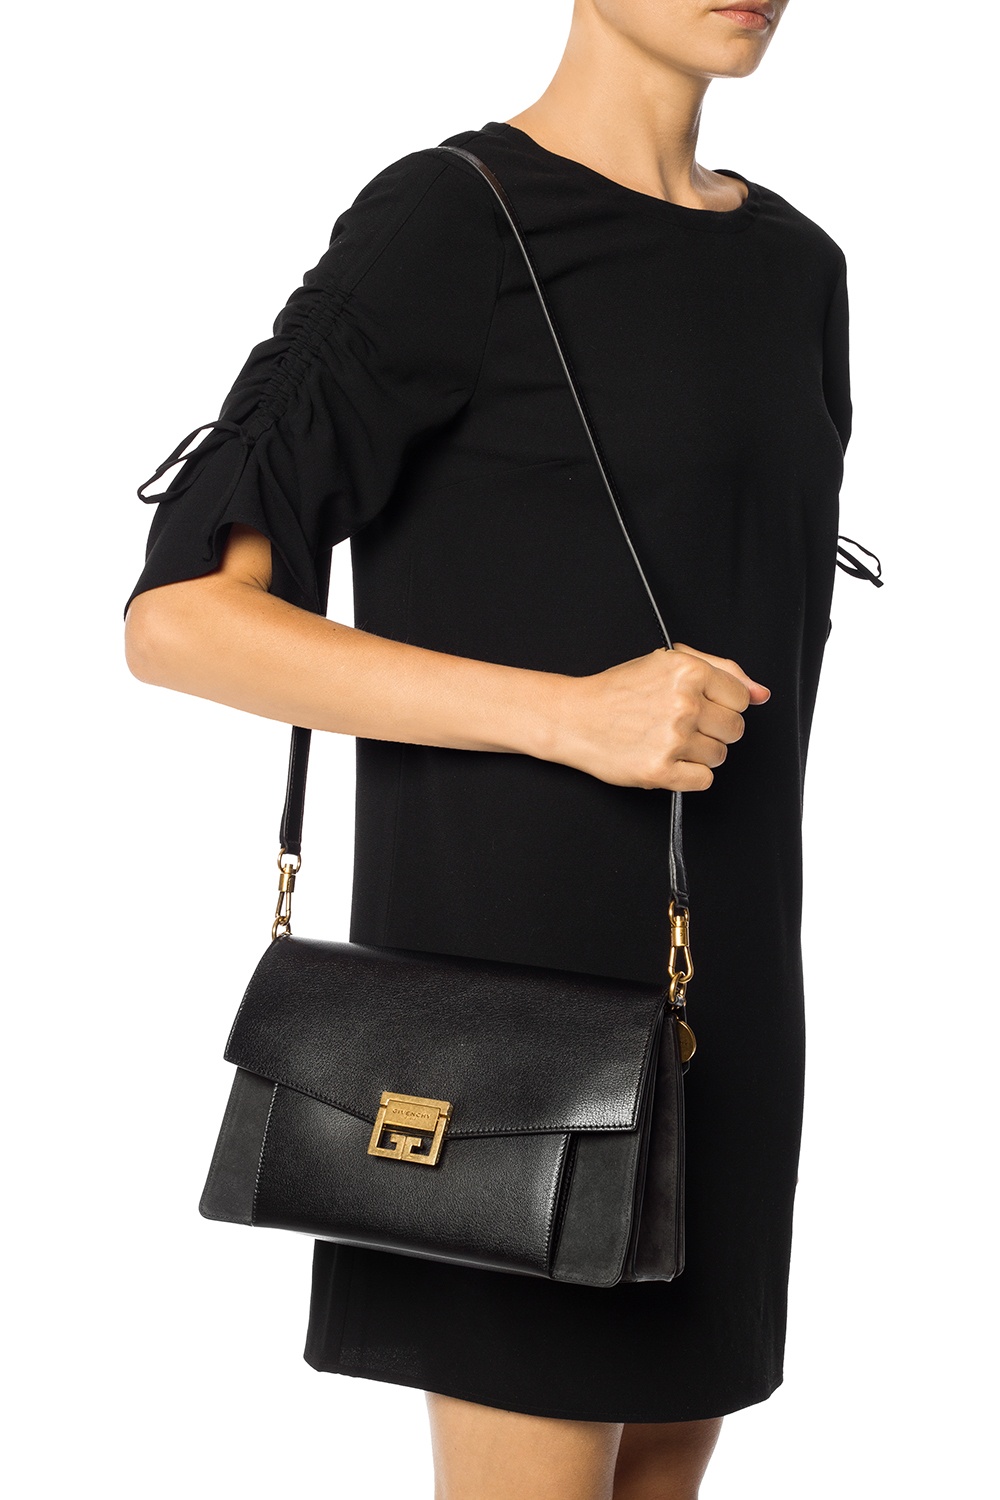 Givenchy 'GV3' shoulder bag